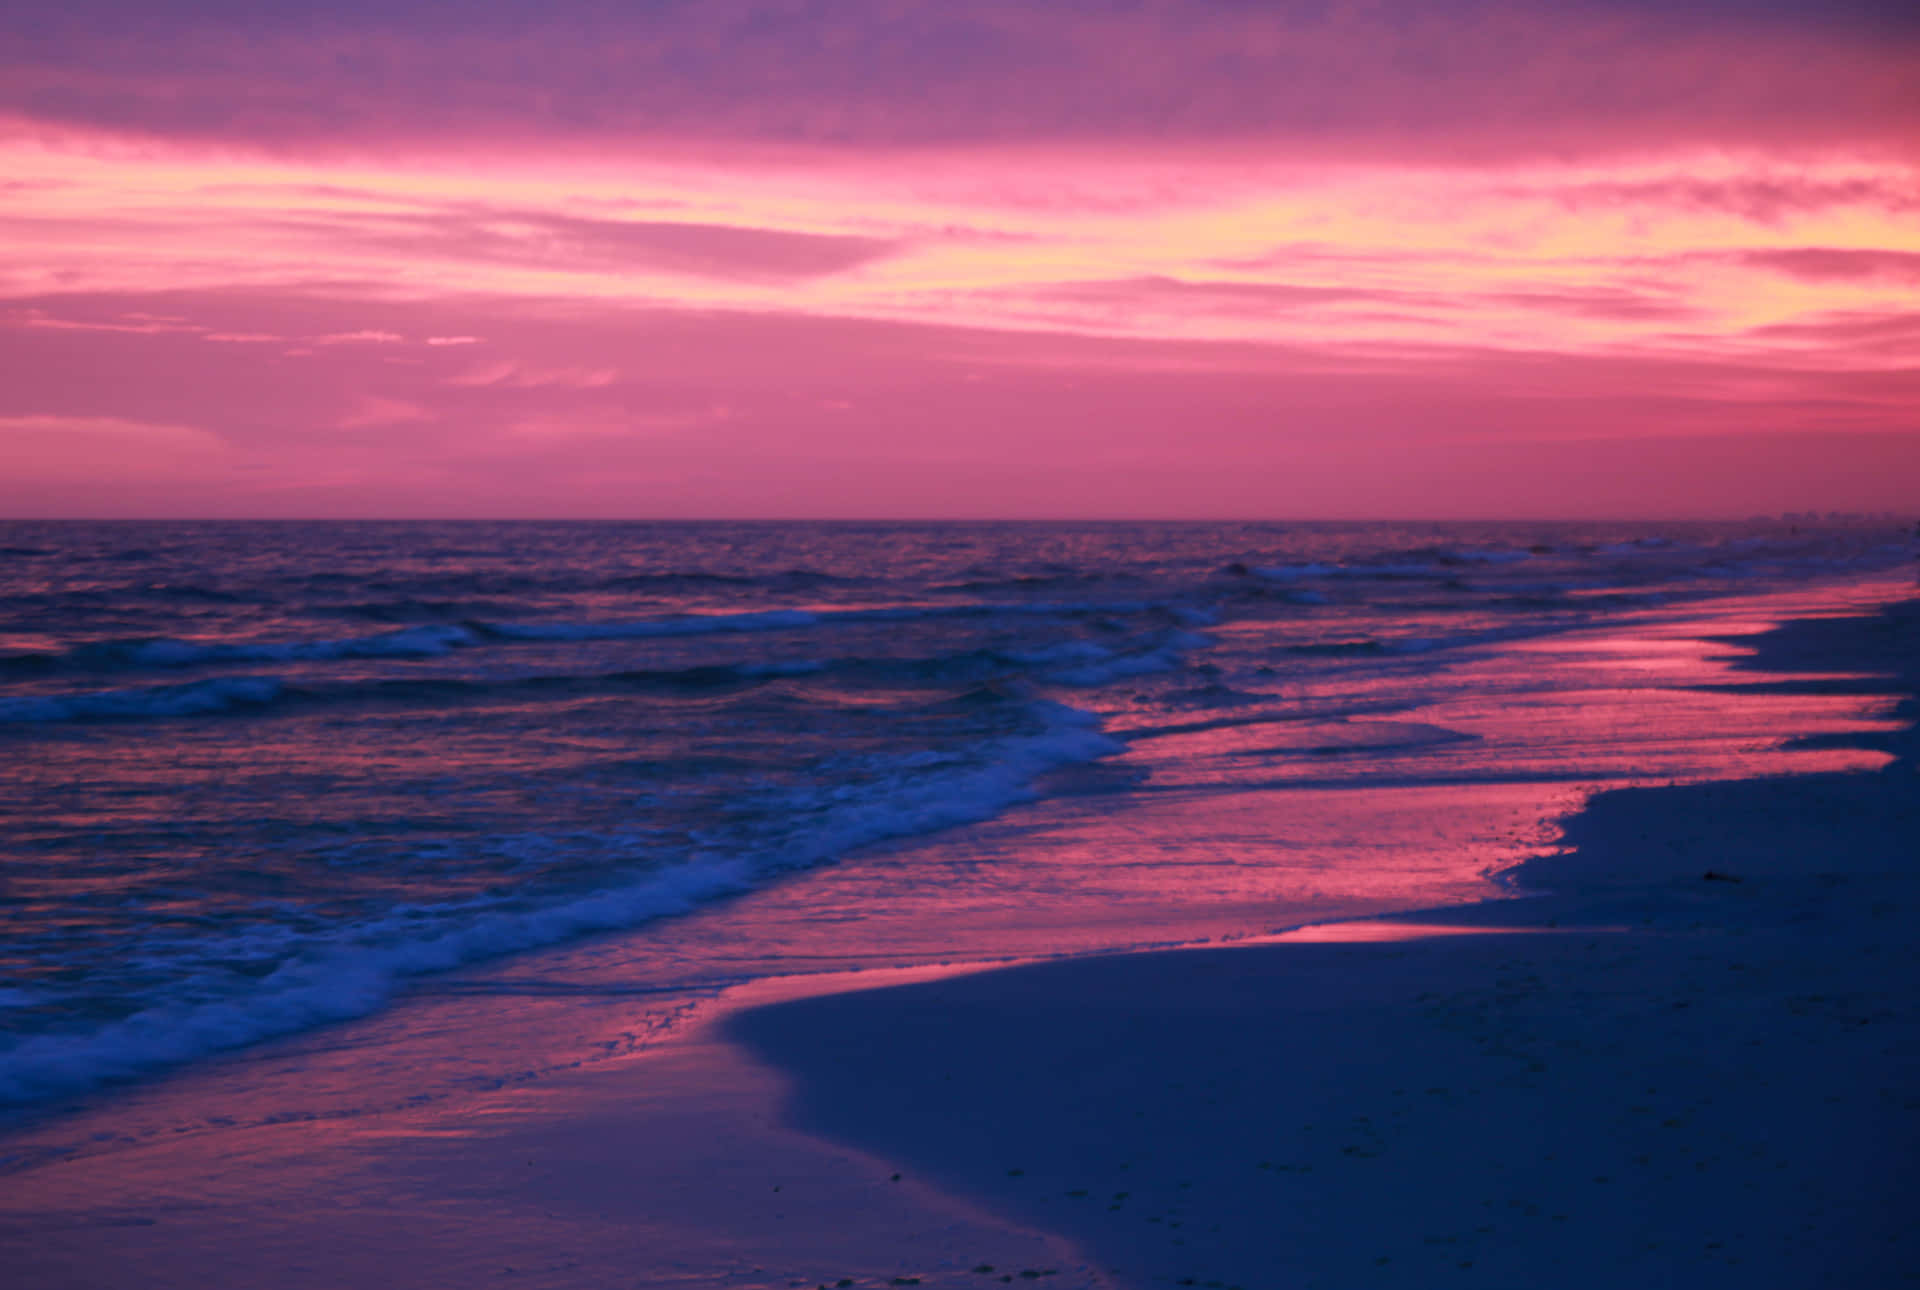 Et billedskønt pastelrosa strand solnedgang, med solstråler strækker sig ud over horisonten. Wallpaper